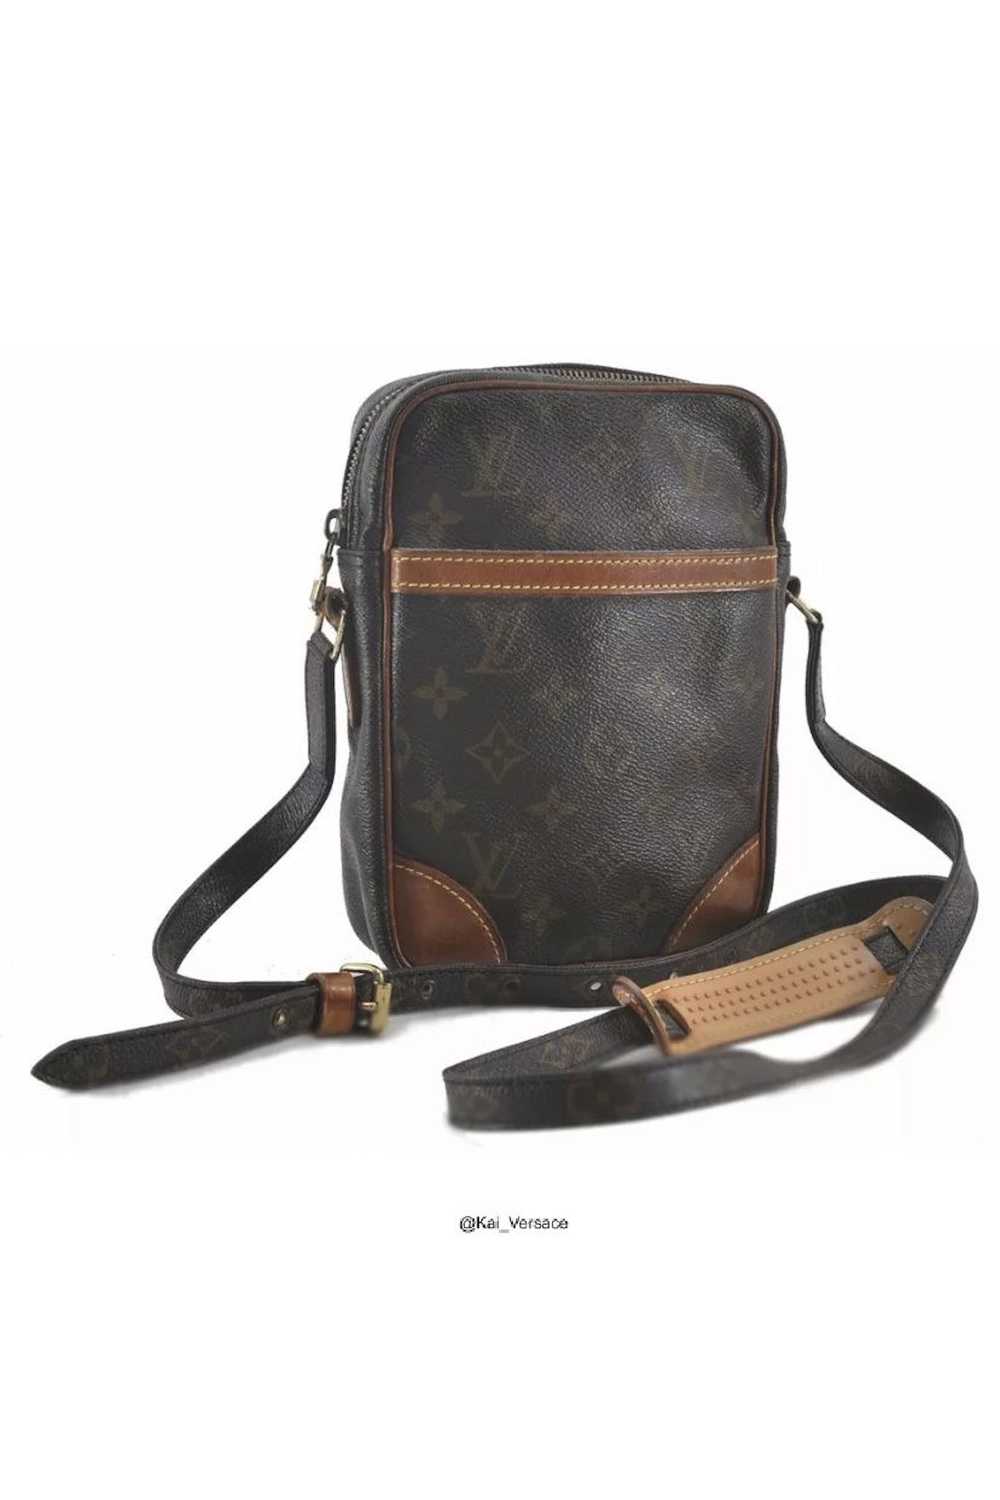 Louis Vuitton Danube Crossbody Bag - image 1